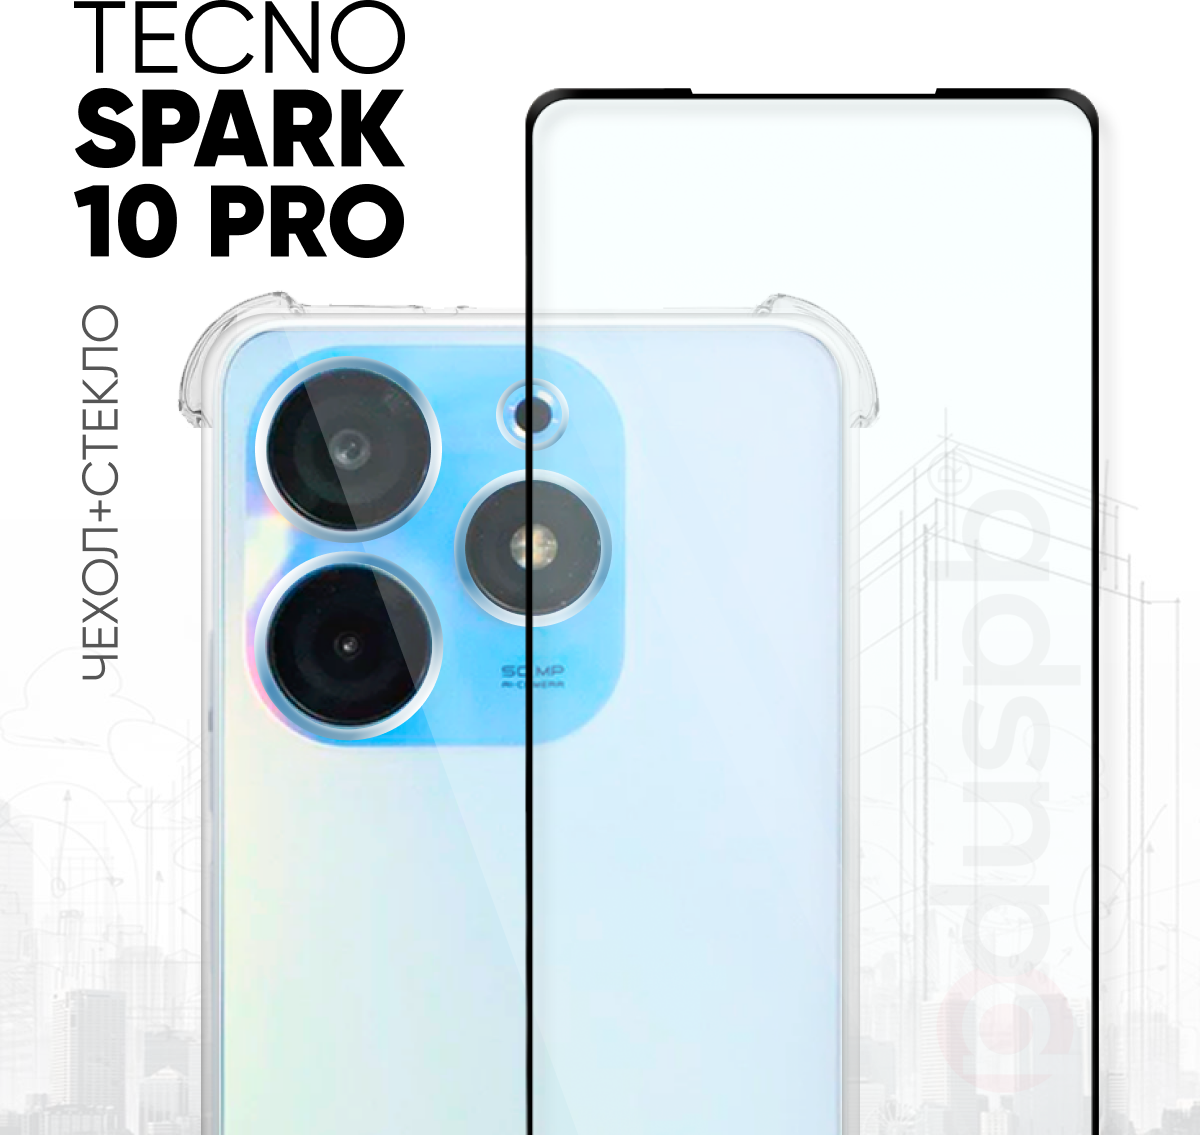 Комплект 2 в 1: Противоударный силиконовый чехол клип-кейс с защитой камеры и углов + полноэкранное защитное стекло для Tecno Spark 10 pro